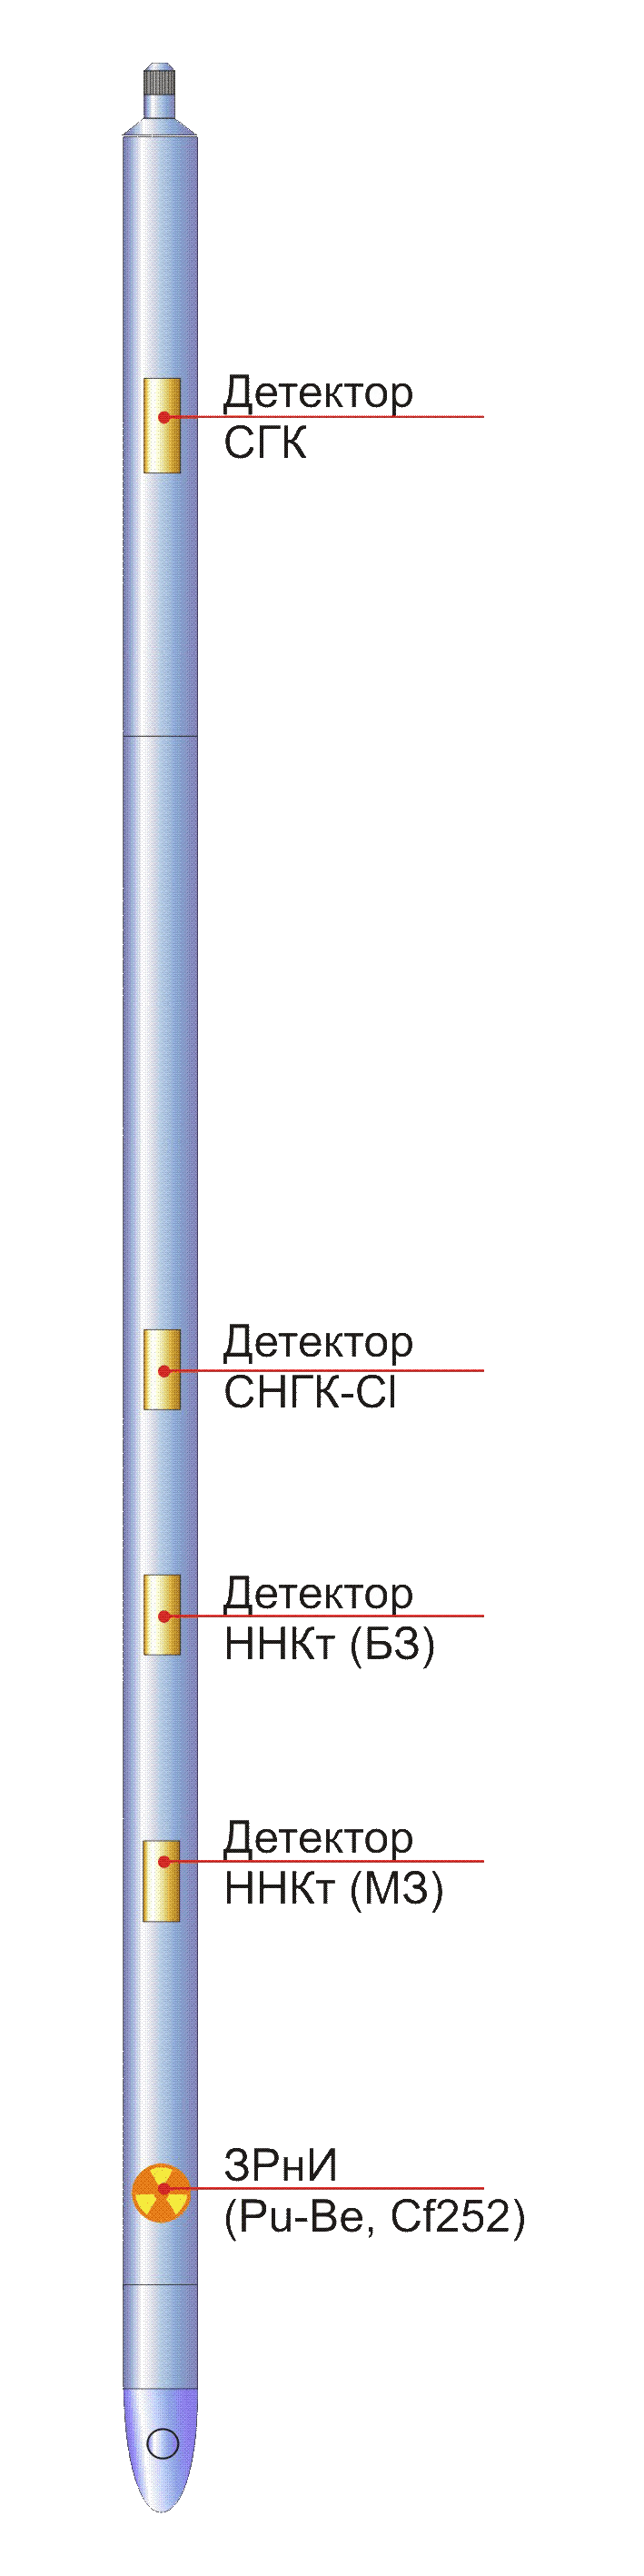 Дефектосткоп-толщиномер